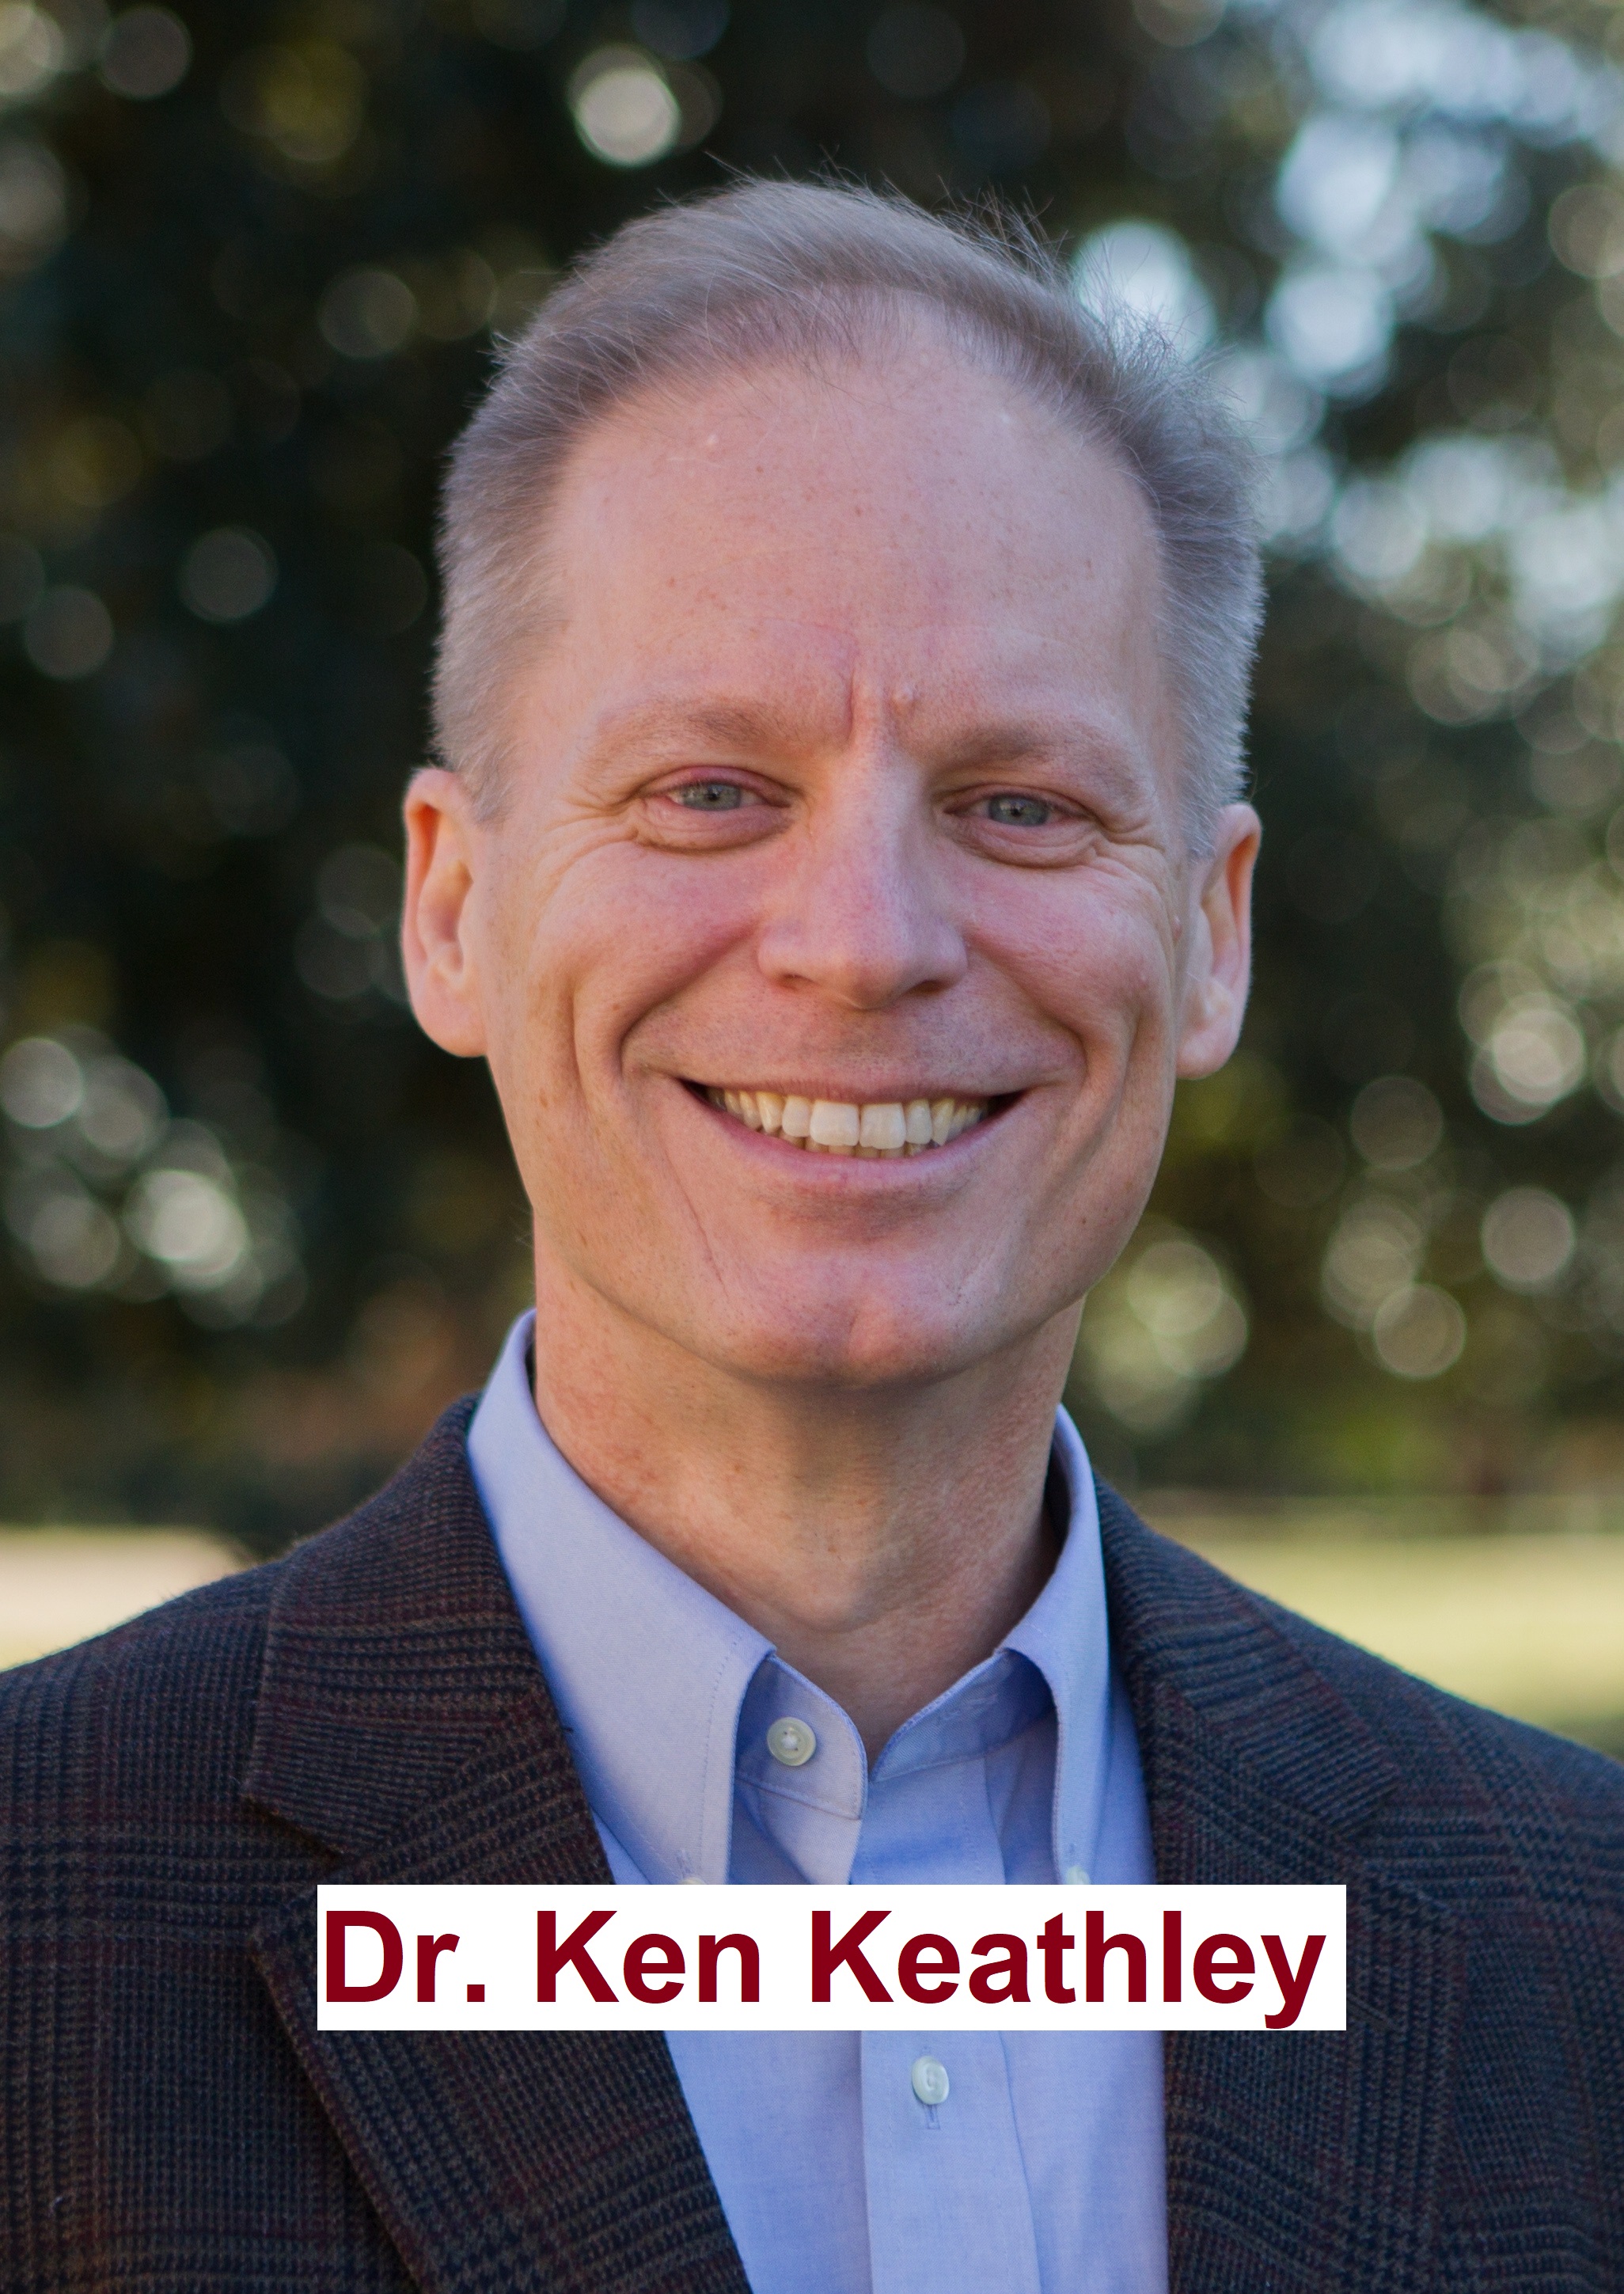 Dr. Ken Keathley